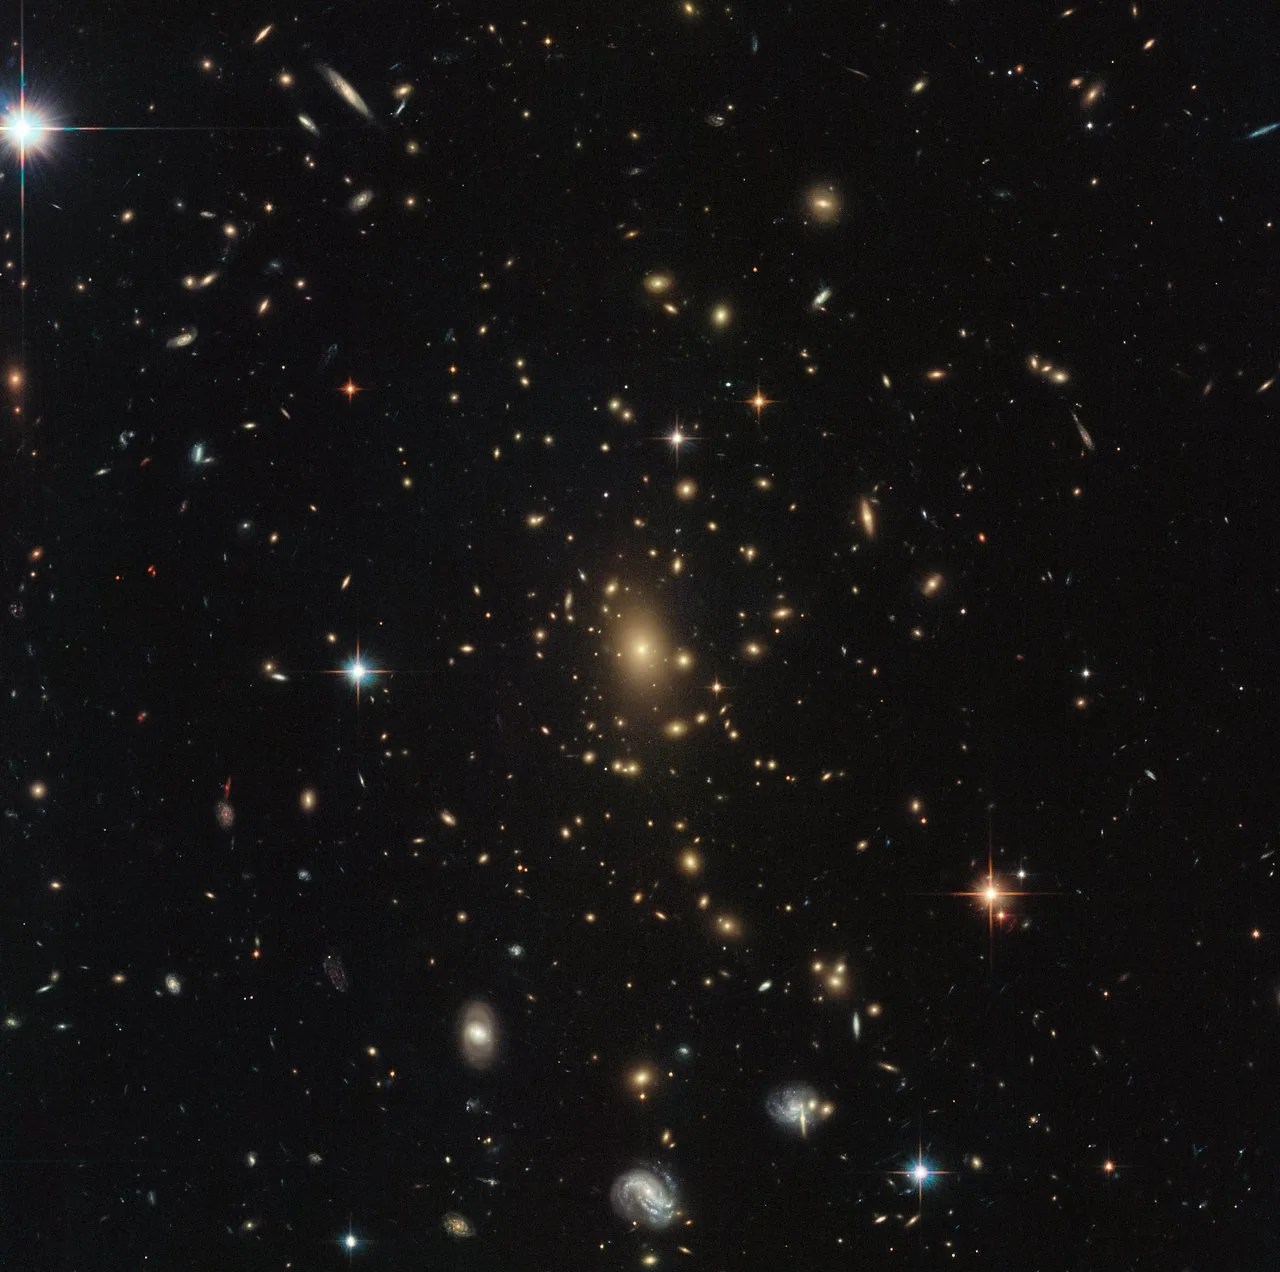 Hubble image of rxc j2211.7-0350